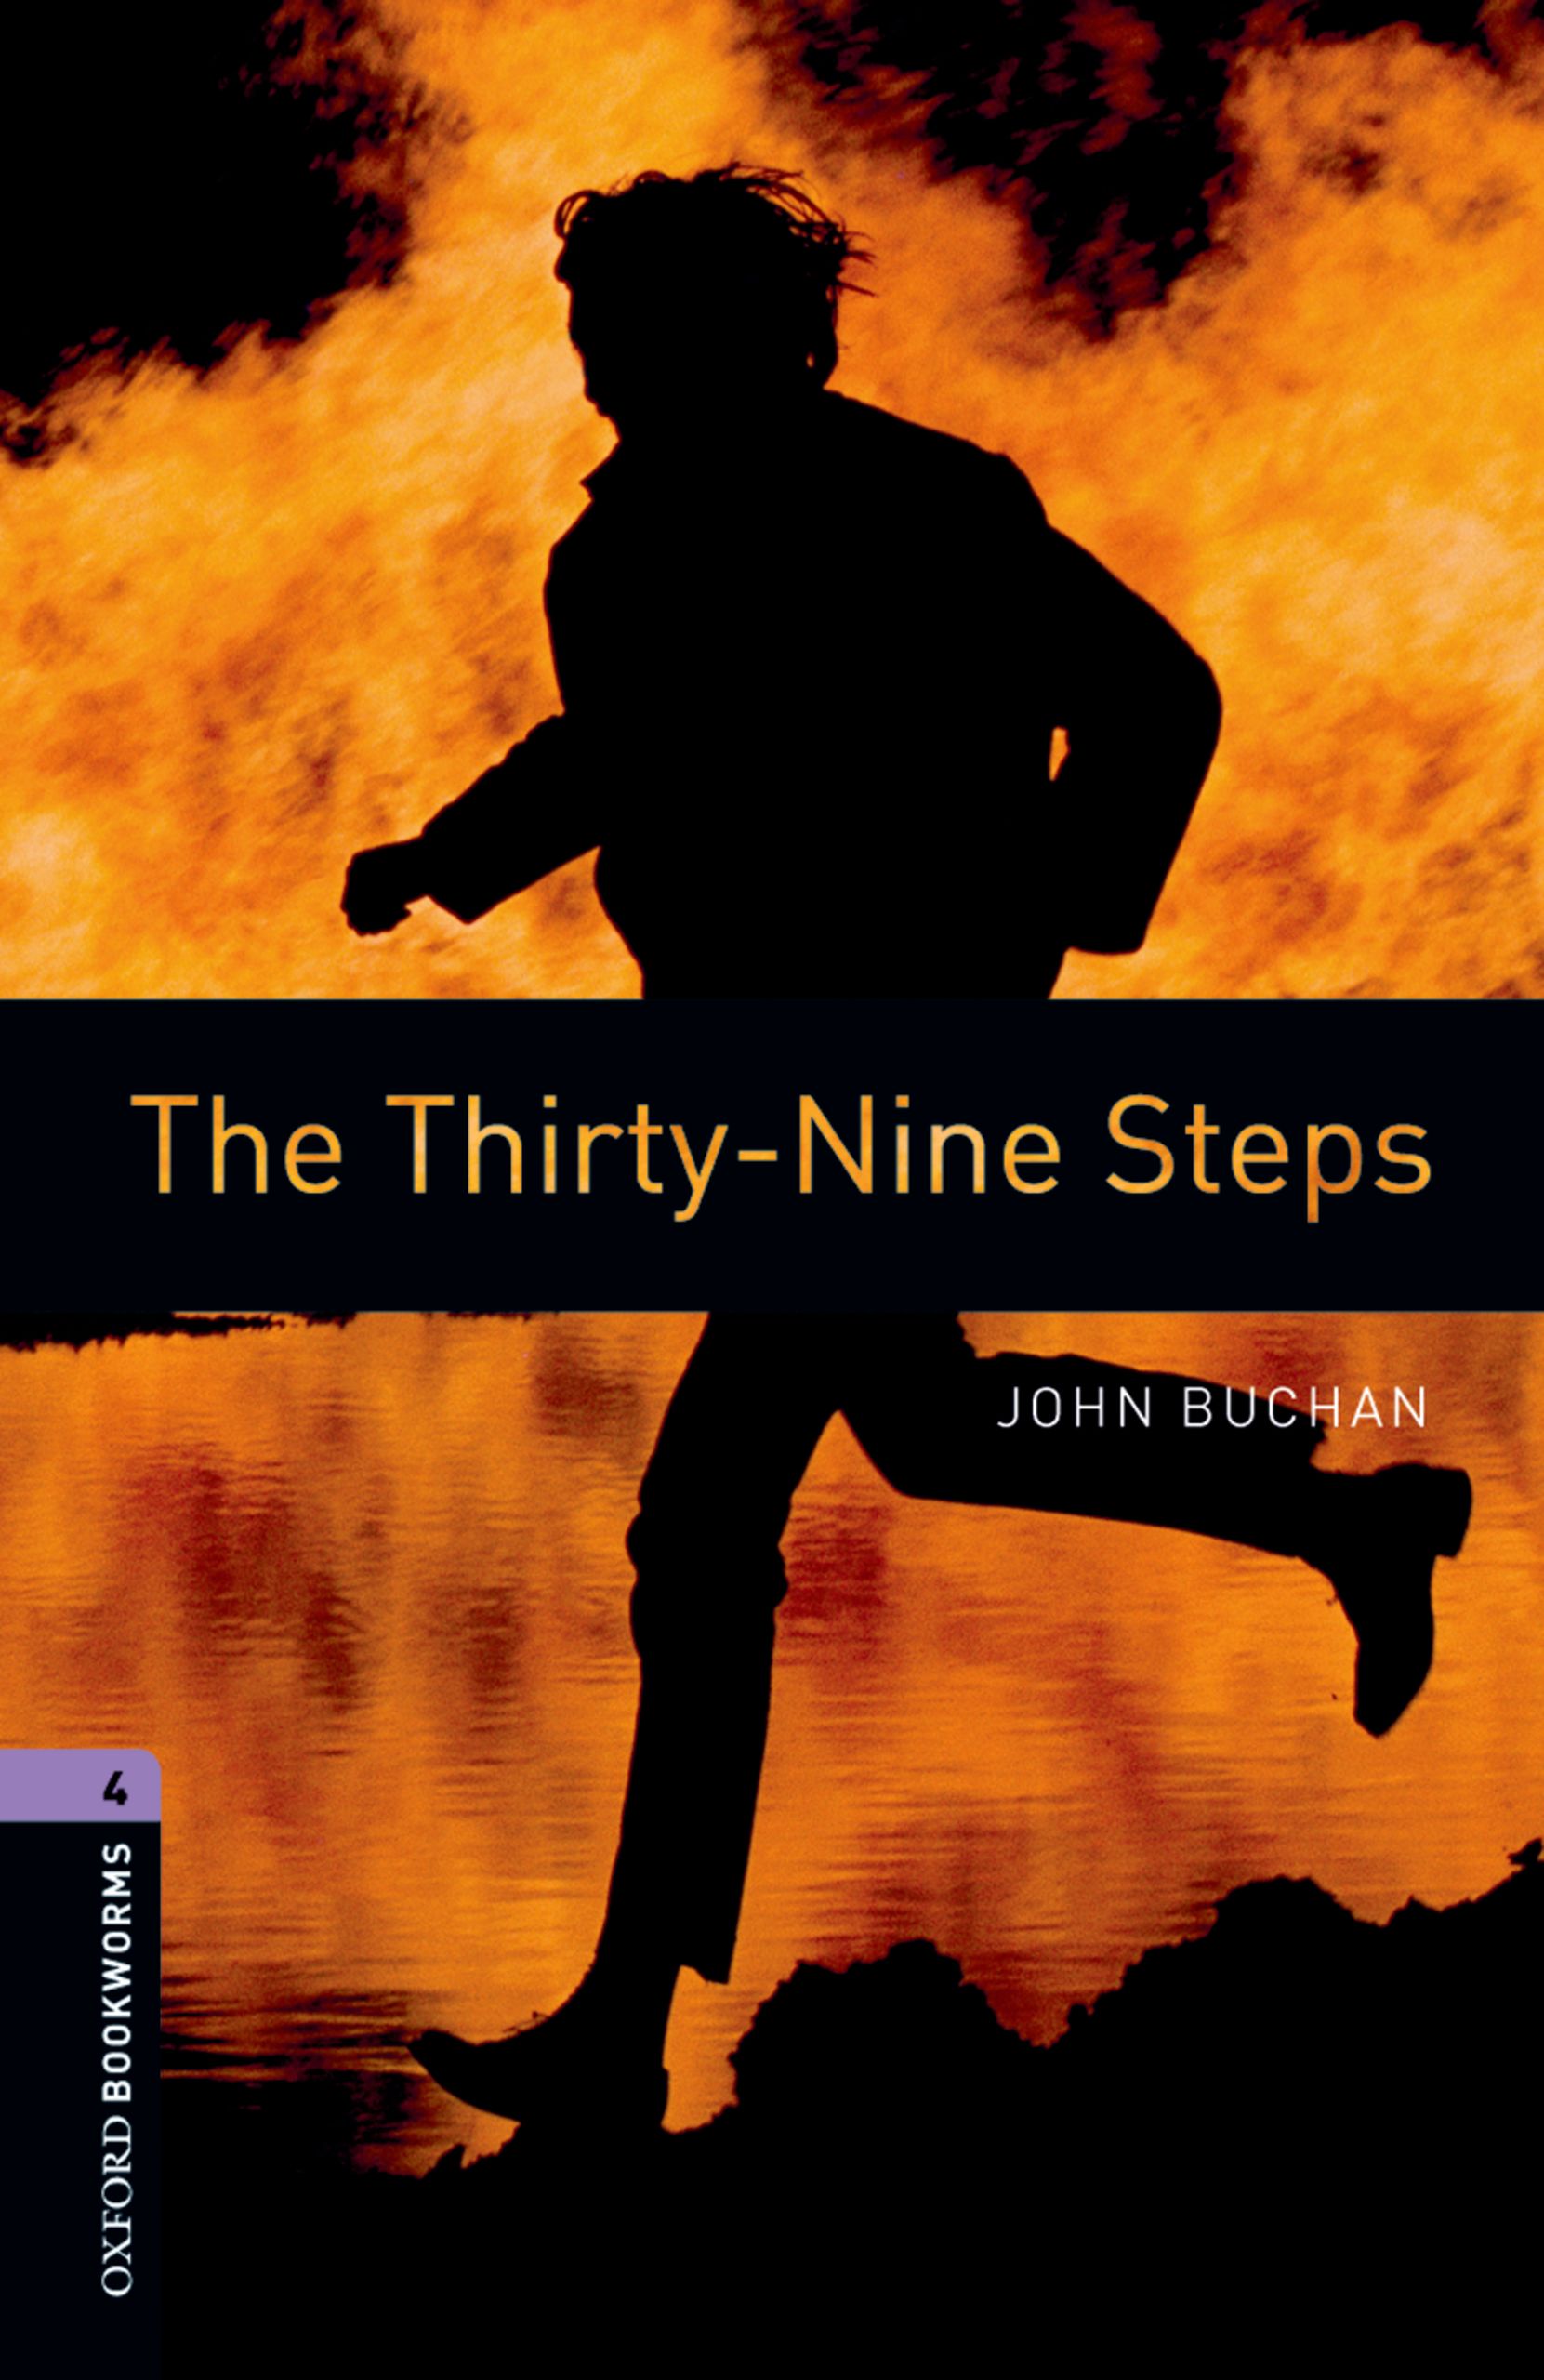 Книга The Thirty-Nine Steps из серии , созданная John Buchan, может относится к жанру Иностранные языки, Иностранные языки, Зарубежная образовательная литература. Стоимость электронной книги The Thirty-Nine Steps с идентификатором 23573048 составляет 405.87 руб.